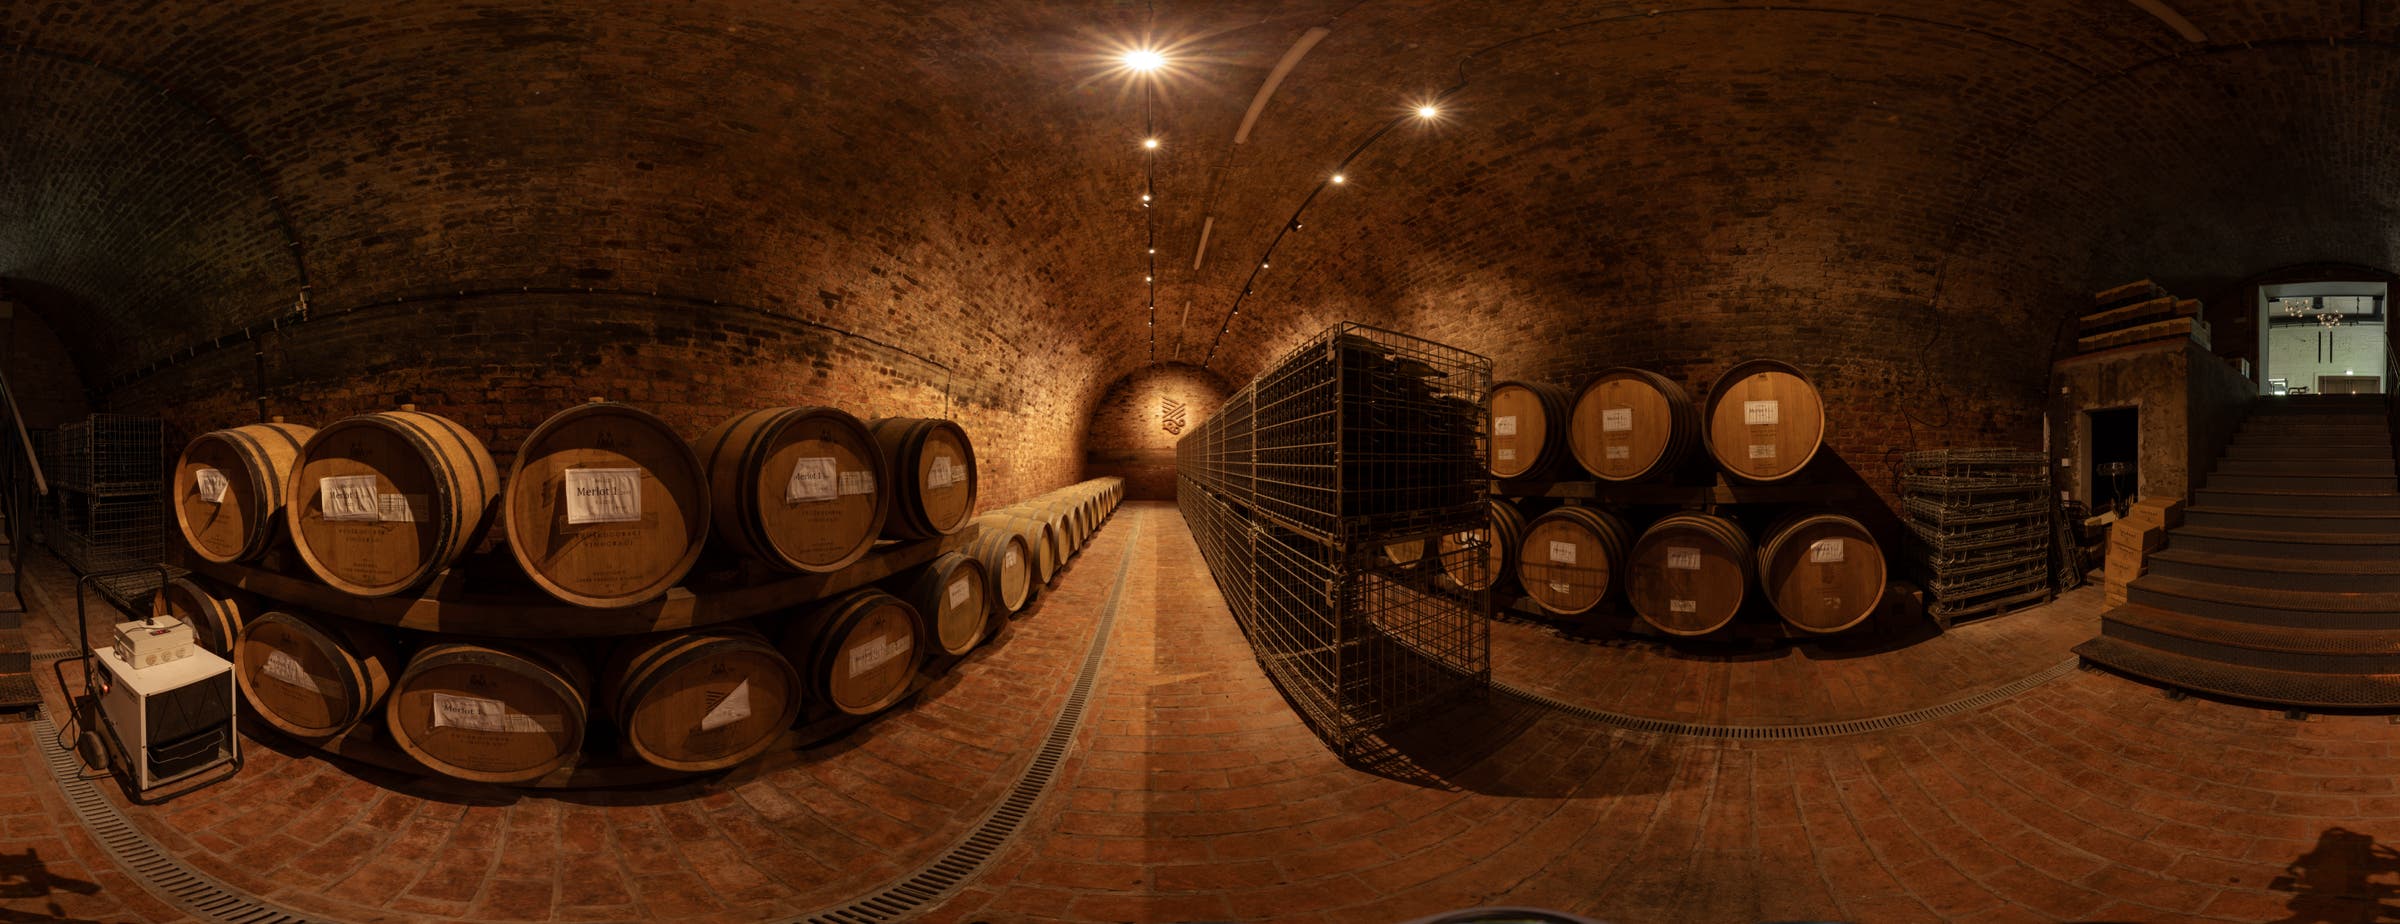 La imagen muestra una vista de 360° de una bodega utilizada para almacenar barriles a lo largo de las paredes. En el centro de la sala, a lo largo del pasillo, se colocan cajas metálicas para guardar botellas de vidrio de vino.